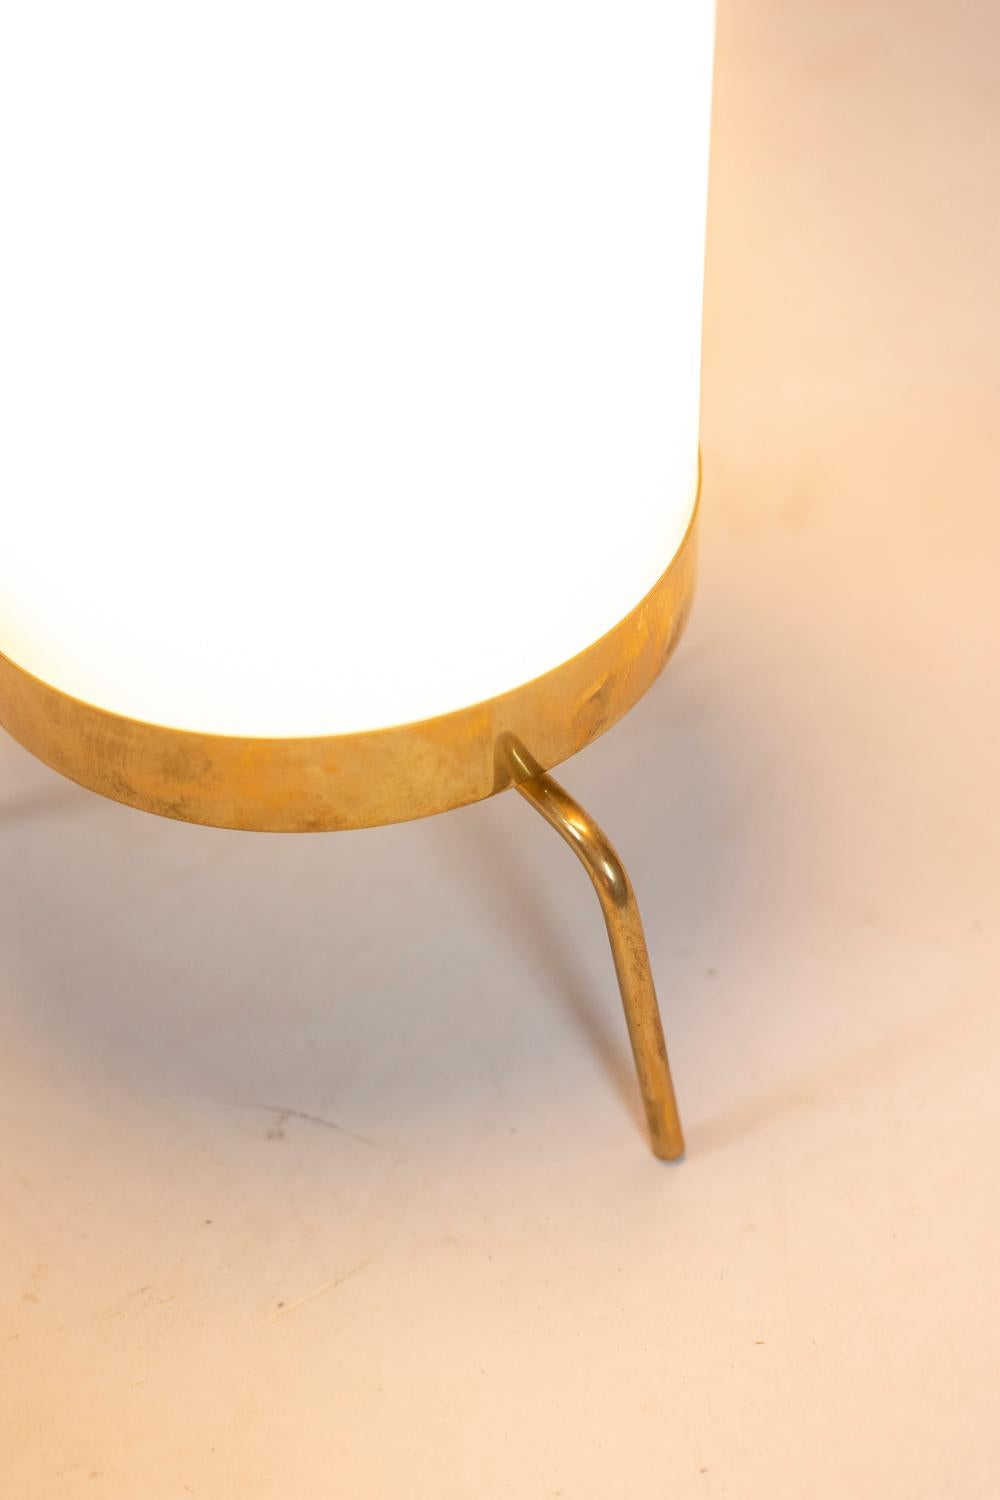 Lampe en opaline blanche et laiton doré, de forme circulaire et tubulaire. Base en forme de trépied.

Œuvre italienne réalisée dans les années 1970.
